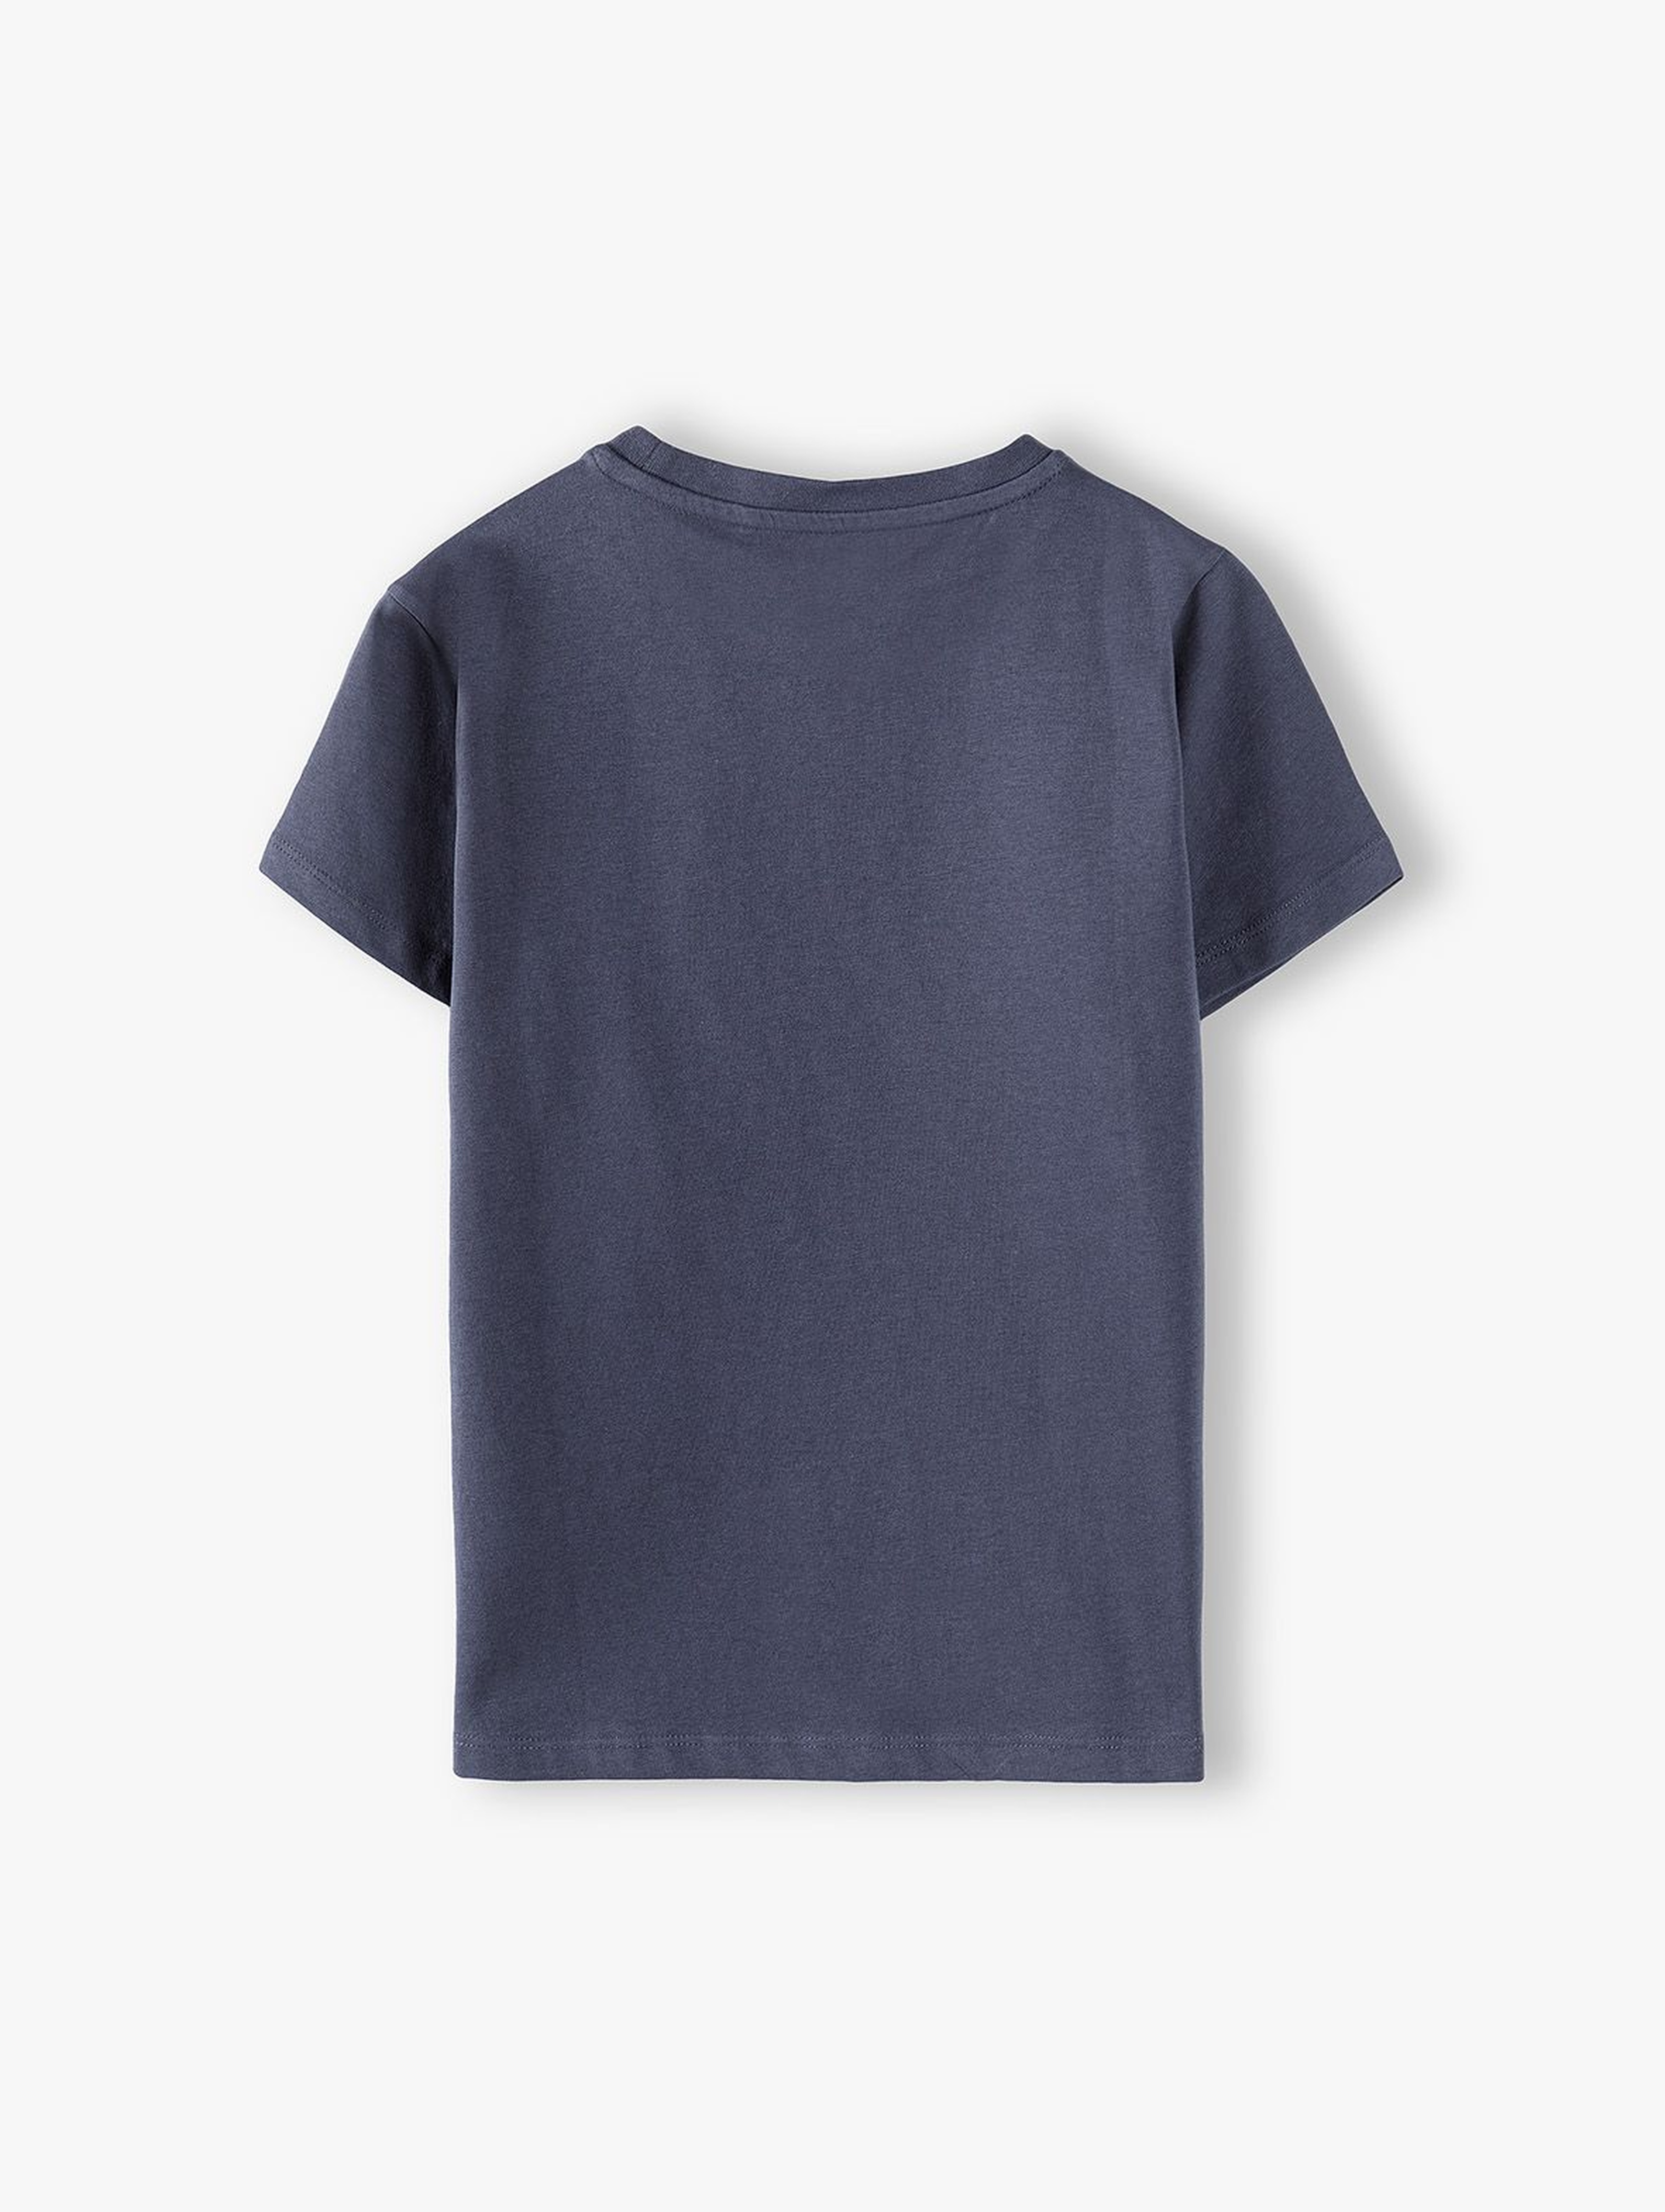 Bawełniany t-shirt chłopięcy- Mały Dżentelmen- ubrania dla całej rodziny